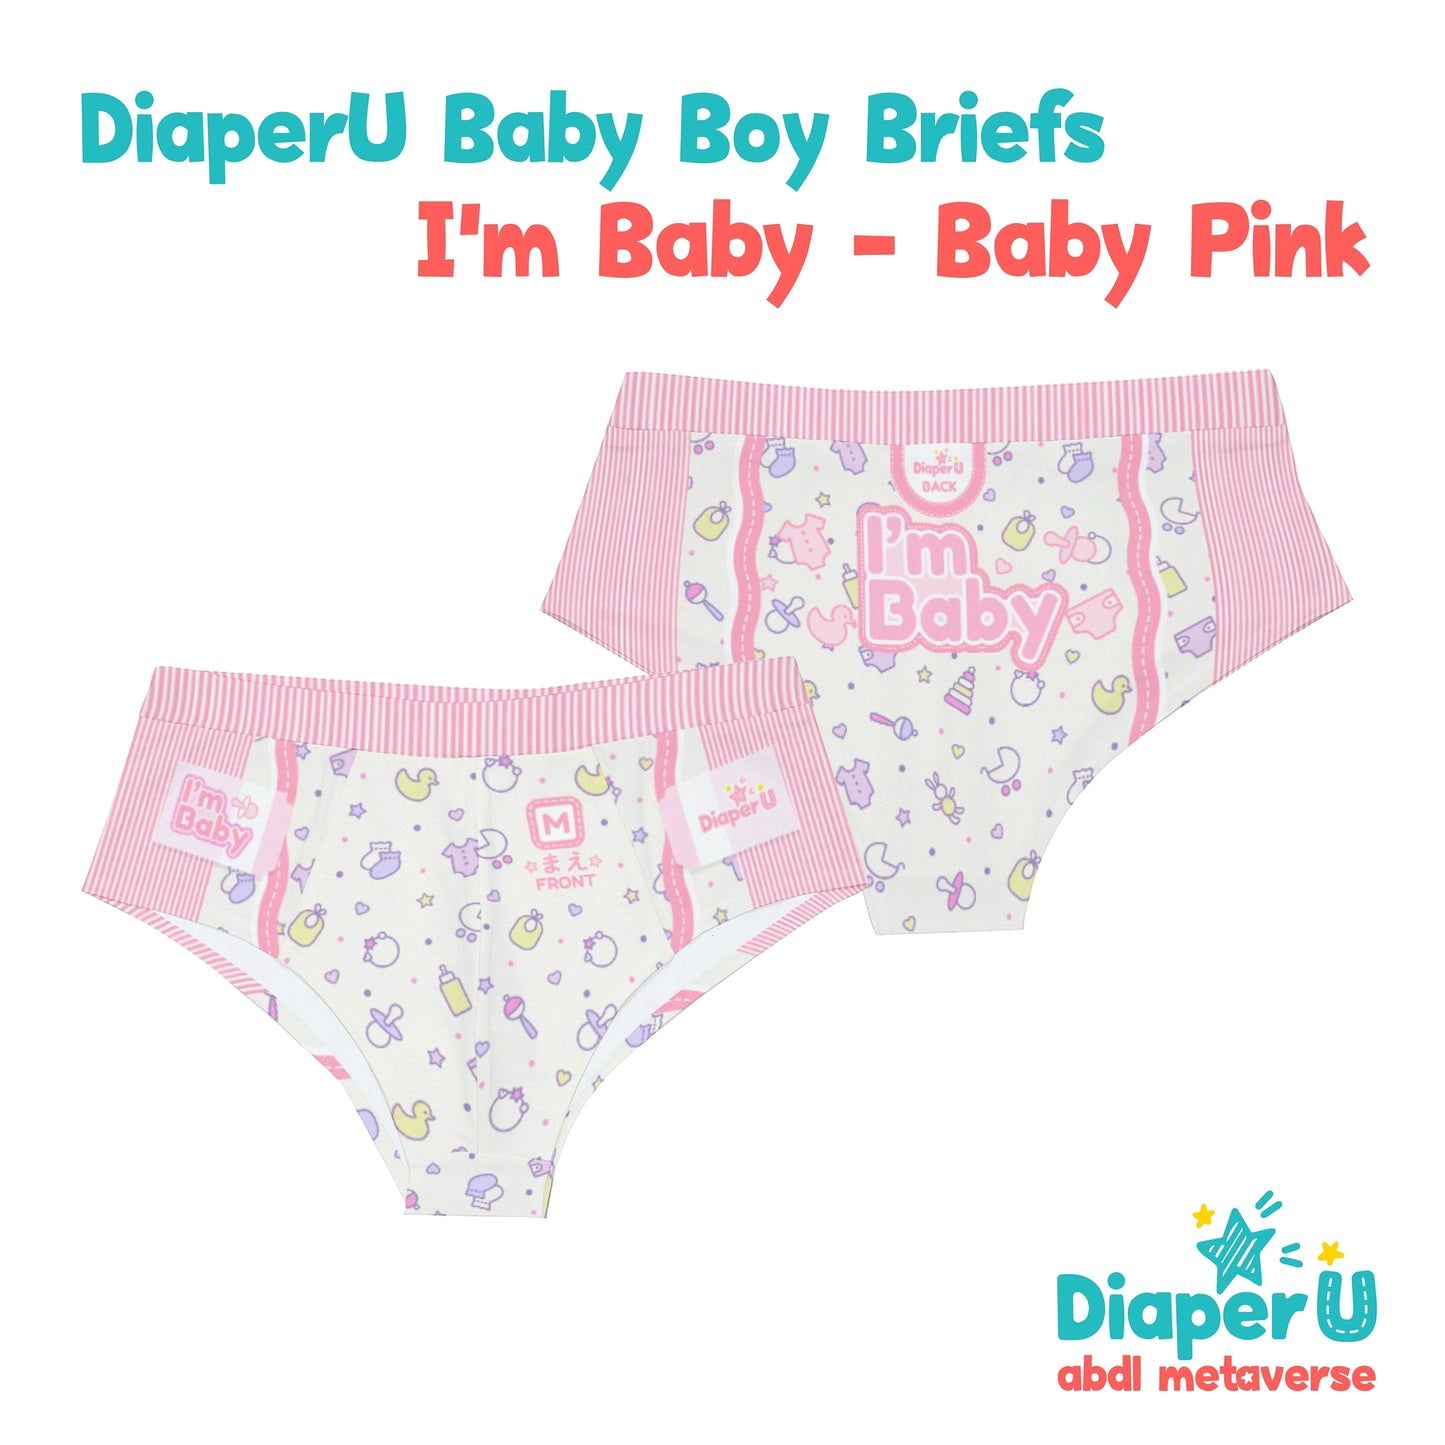 Baby Boy Briefs - I'm Baby (Baby Pink)